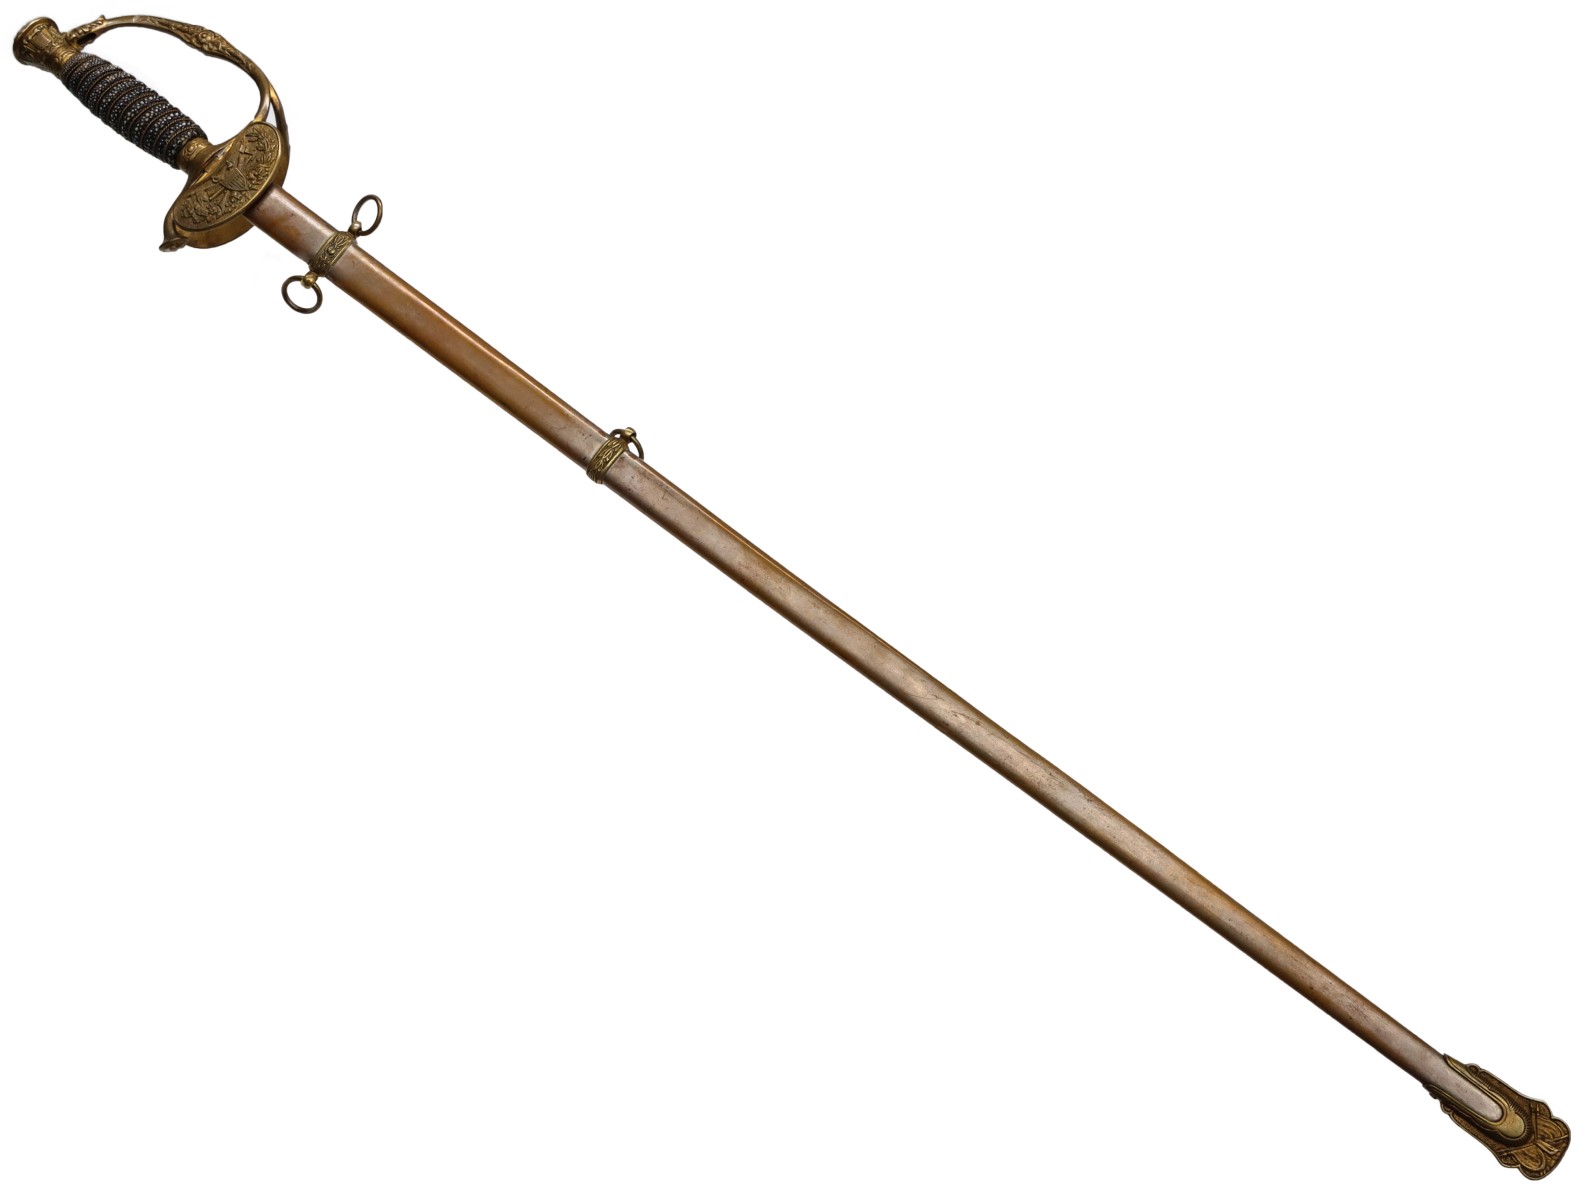 A WILSON MODEL 1860 STAFF OFFICER'S DRESS SWORD